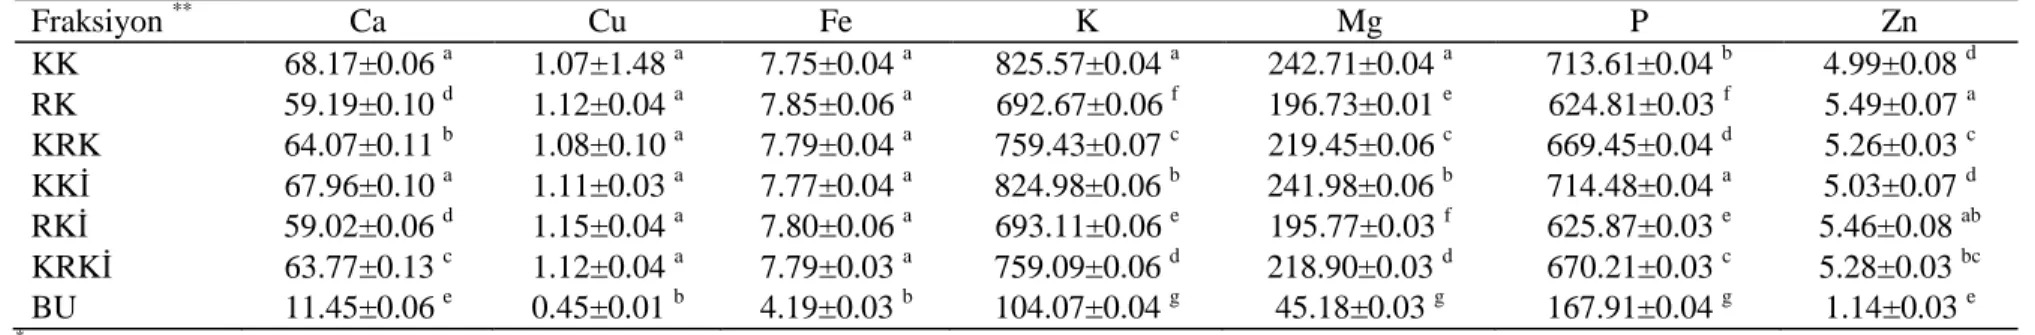 Çizelge 4.5. Bezostaya buğdayından elde edilen kepek fraksiyonlarına ait bazı mineral madde miktarı (mg/100g) sonuçları  * Fraksiyon  ** Ca  Cu  Fe  K  Mg  P  Zn  KK   68.17±0.06  a 1.07±1.48  a 7.75±0.04  a 825.57±0.04  a 242.71±0.04  a 713.61±0.04  b 4.9